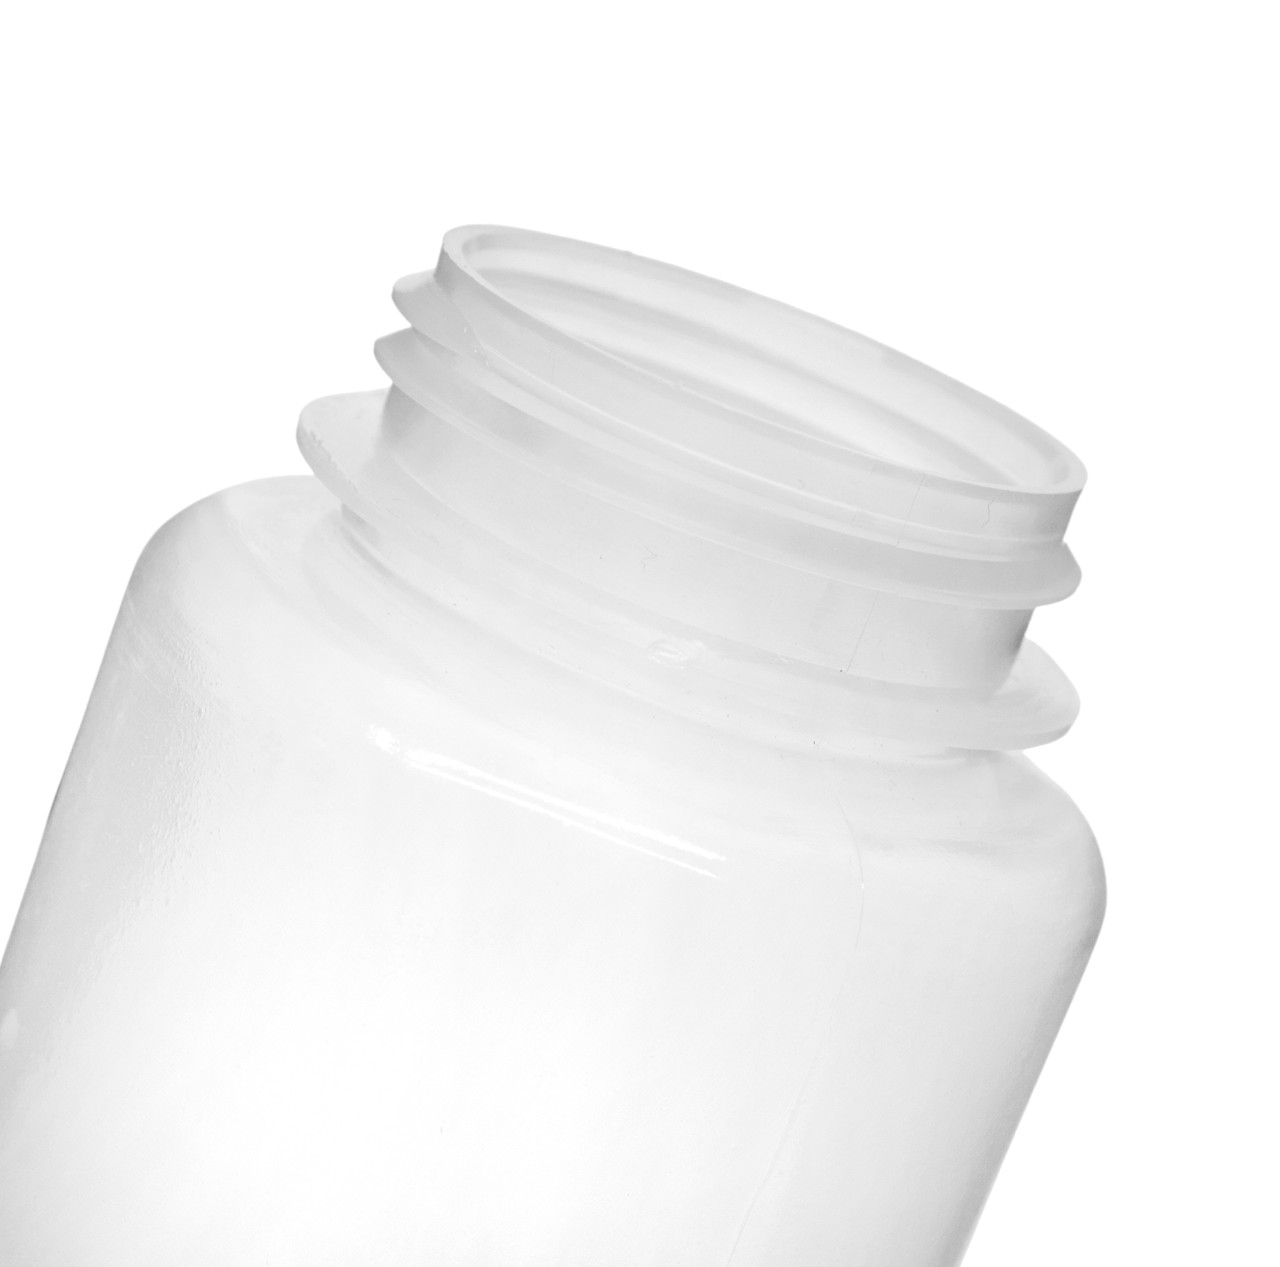 Nalgene® 342040-1000 1000mL PET Square Media Bottles in Shrink Wrap,  Sterile, case/24